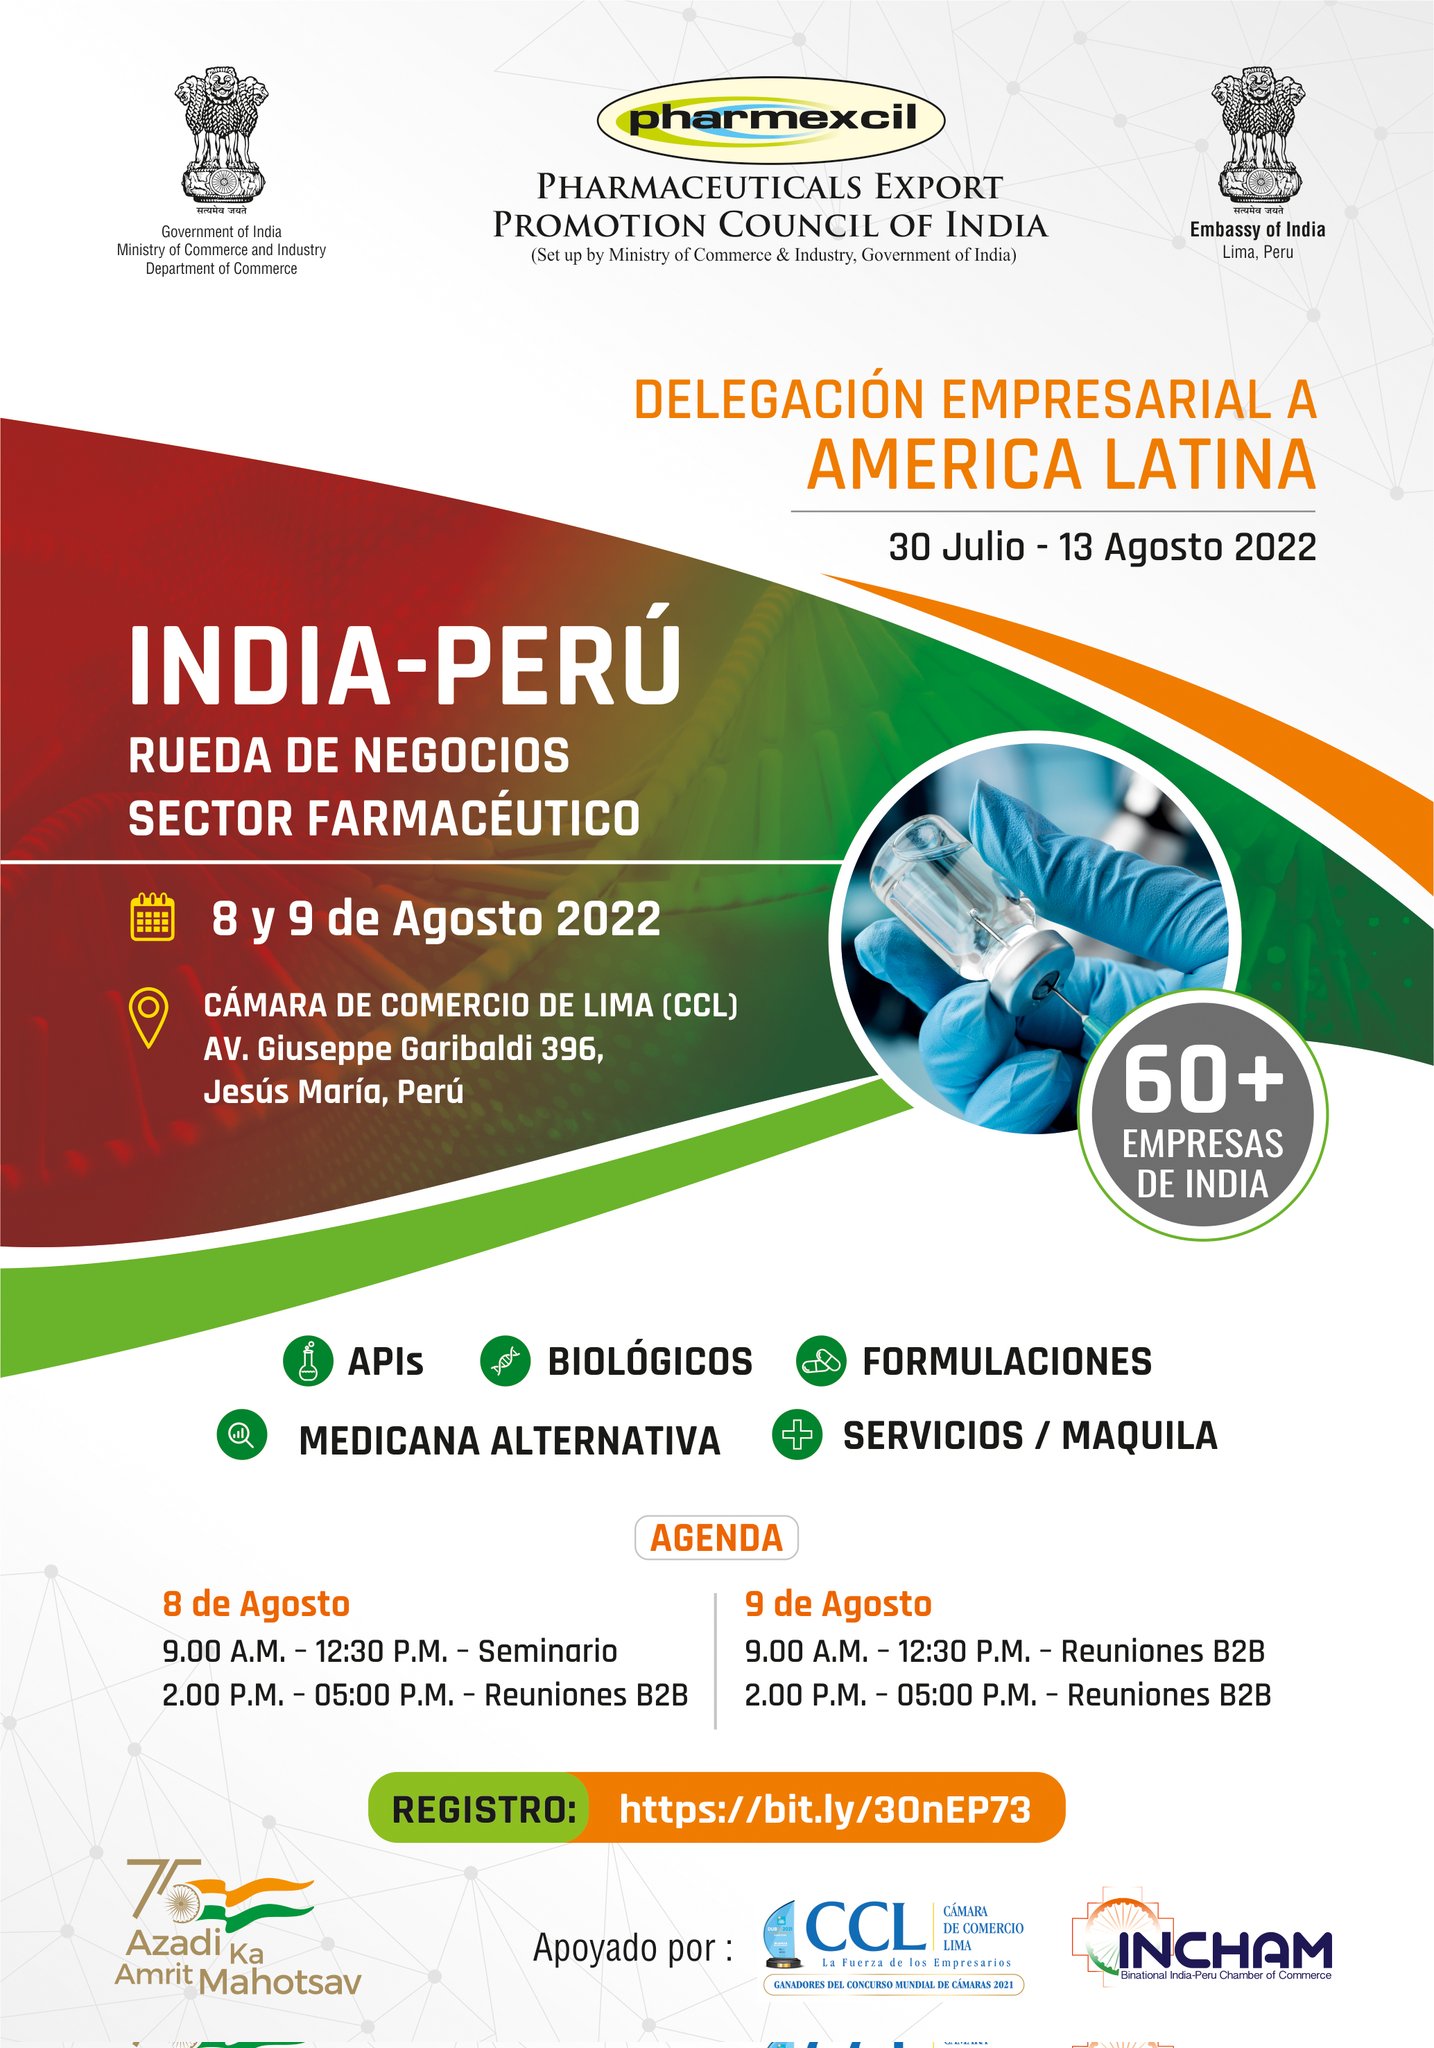 India-Peru Pharma Business Meet